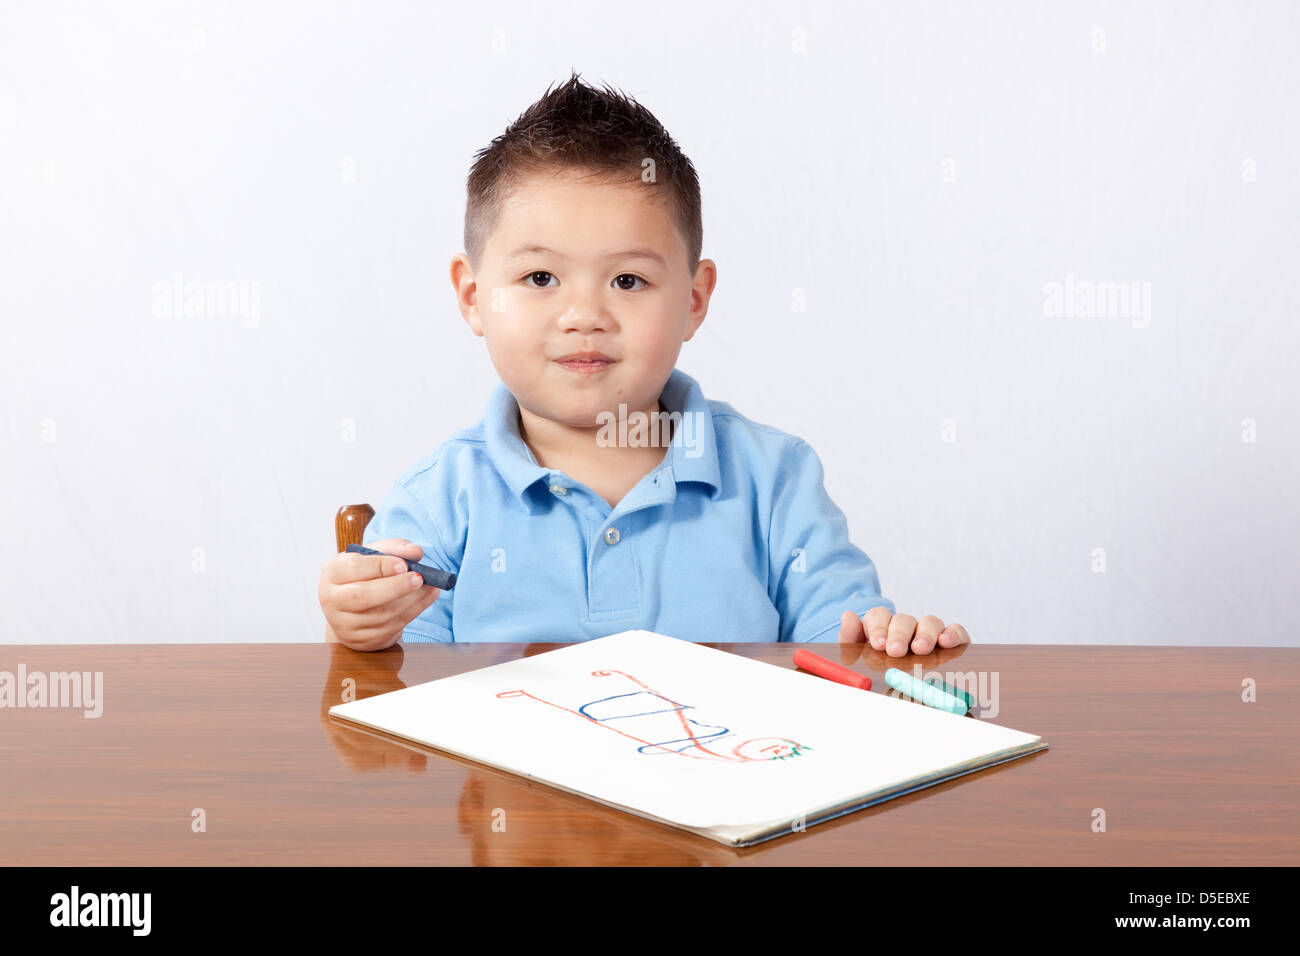 süße junge sitzt an einem Holztisch mit Papier und Bleistift, schreiben und zeichnen auf dem Papier Stockfoto